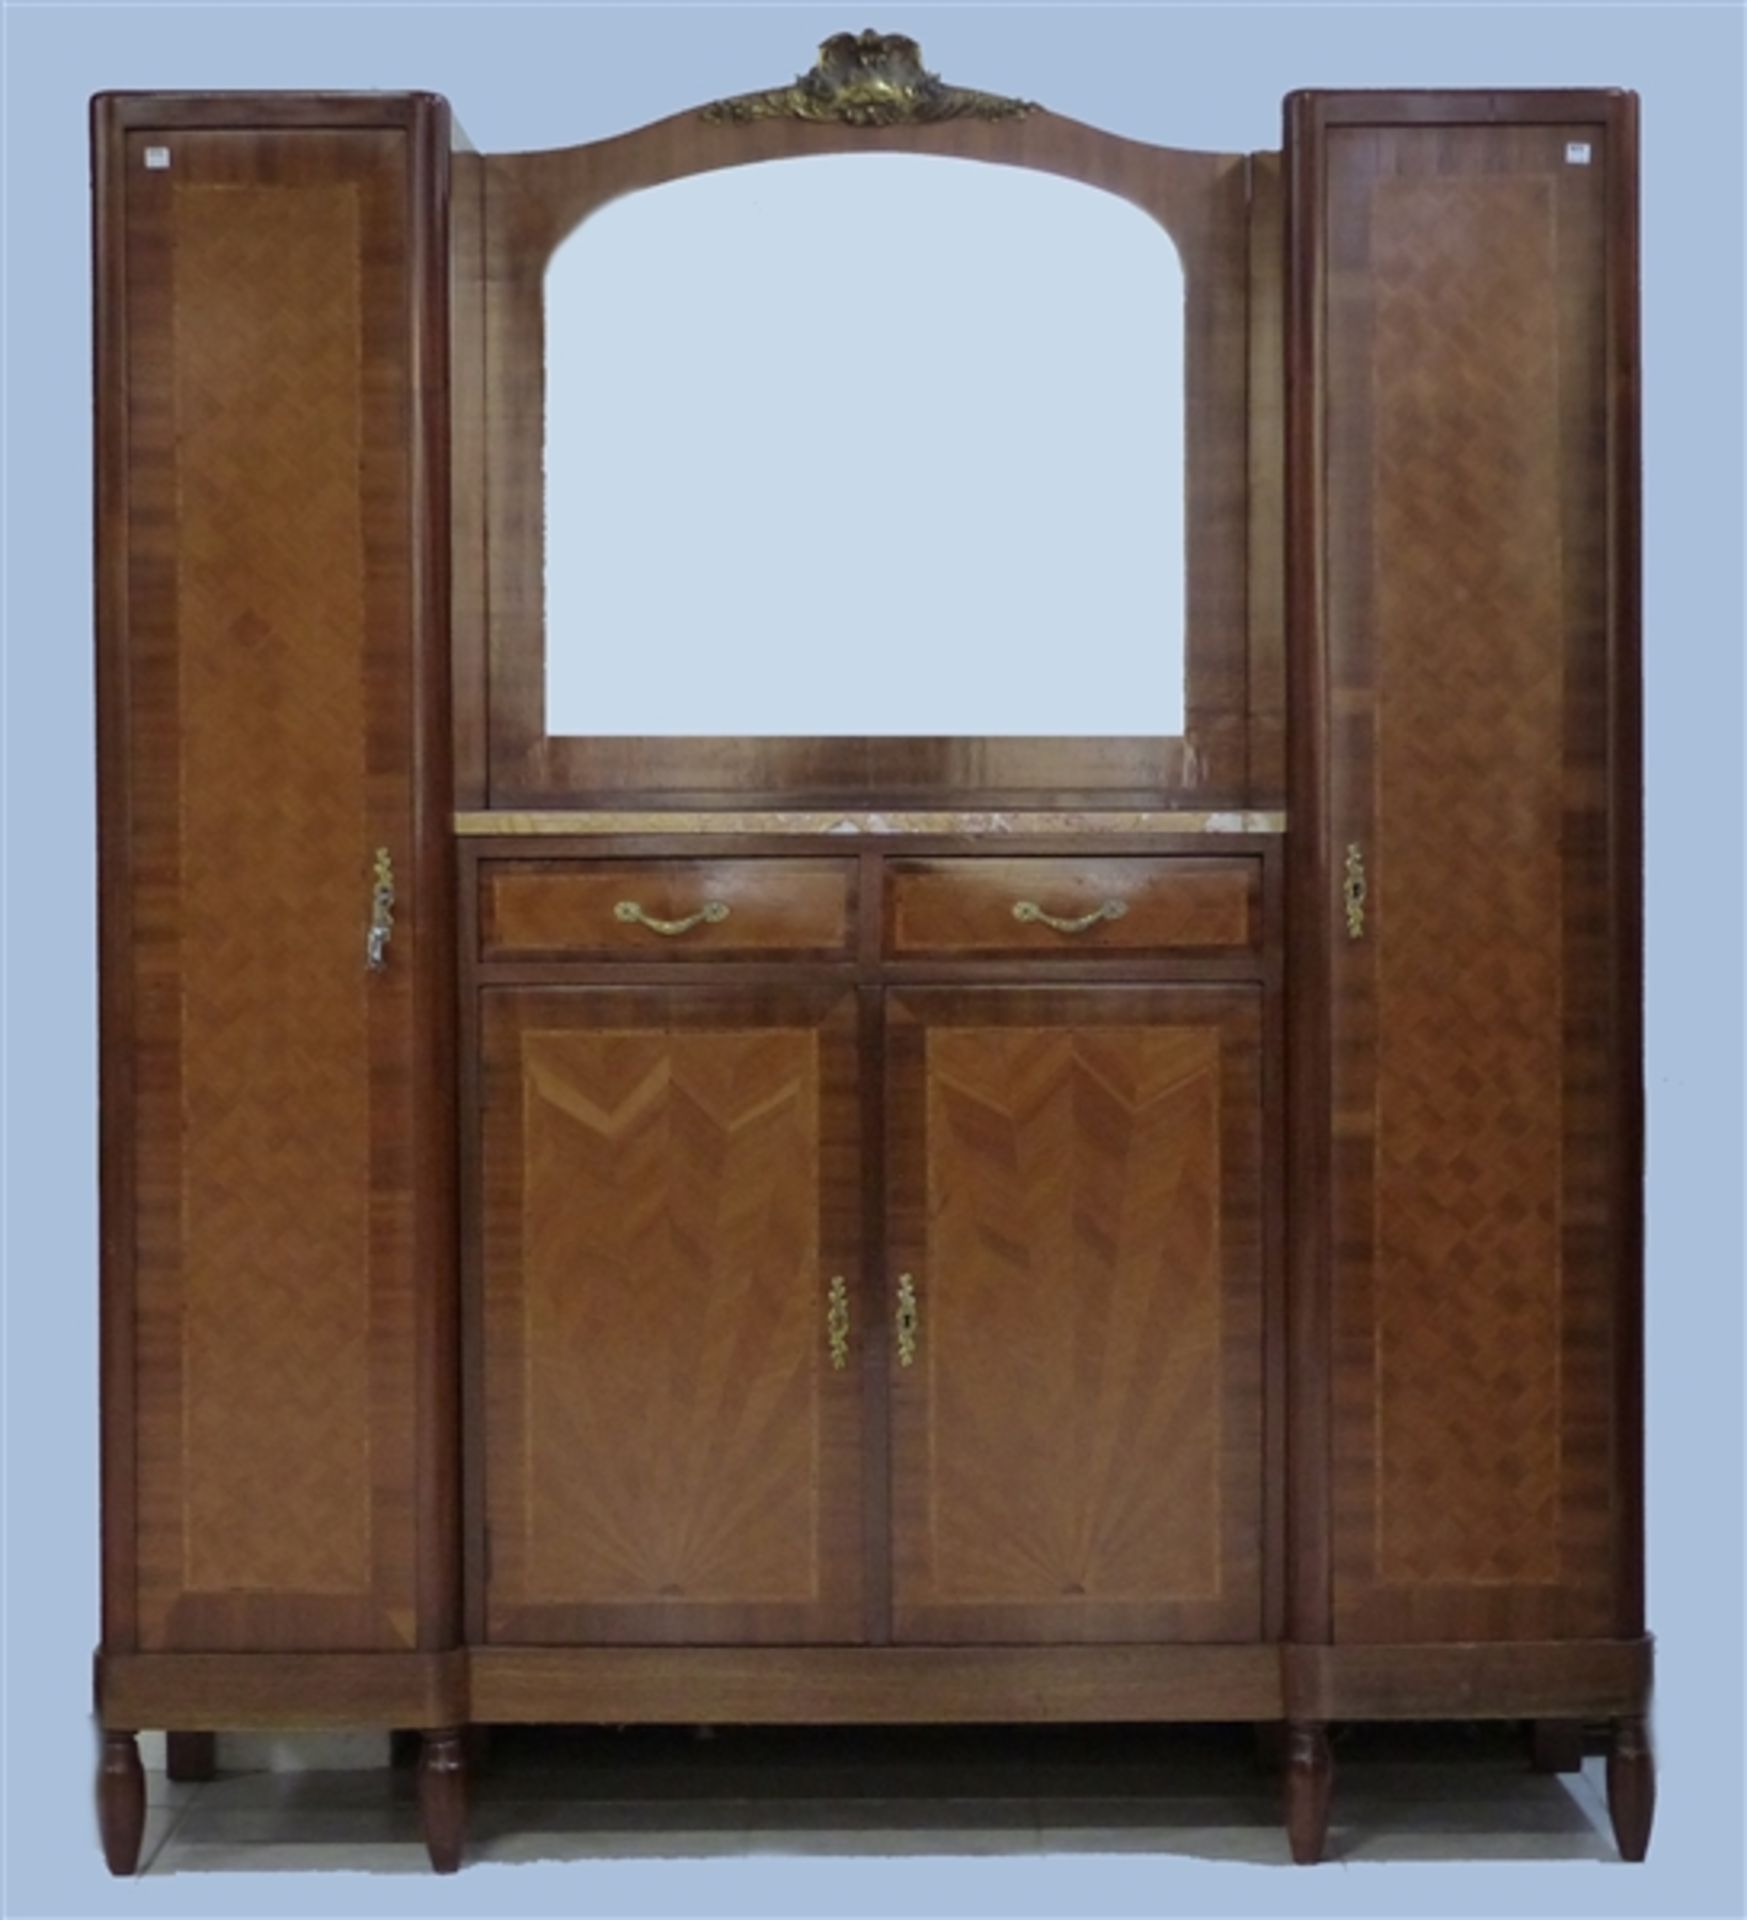 Boudoirmöbel Mahagoni, Maketerie mit verschiedenen Edelhölzern, seitlich zwei Türen, offenes